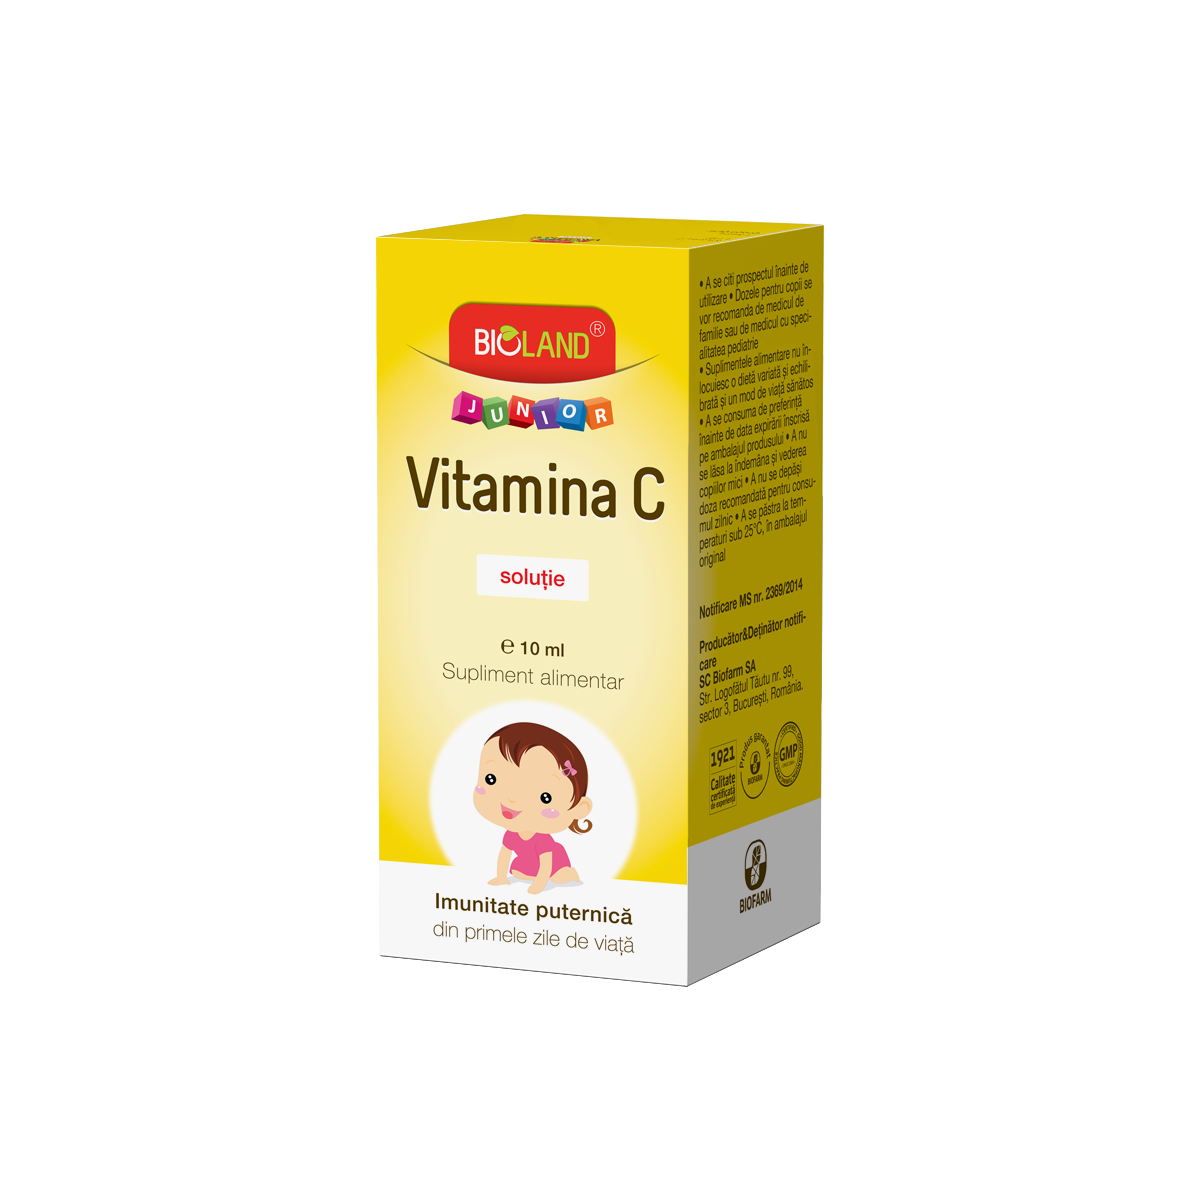 Copii - Bioland Junior Vitamina C soluţie, 10 ml, Biofarm, sinapis.ro